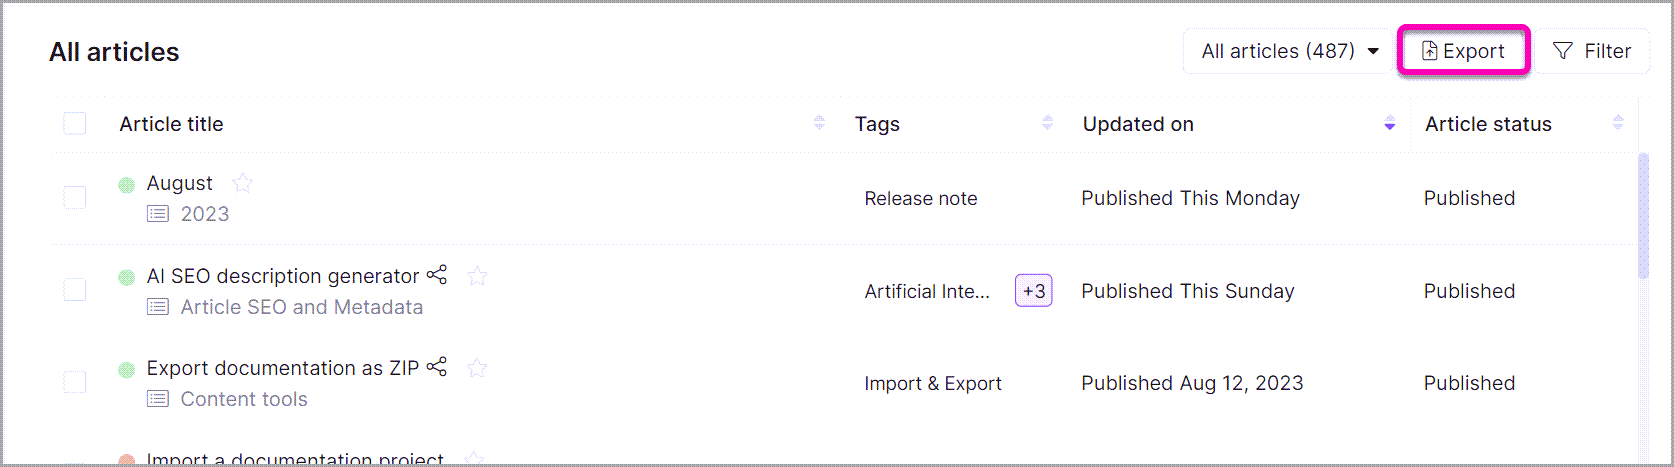 5_Screenshot-All_articles-Bulk_operations_Export_option